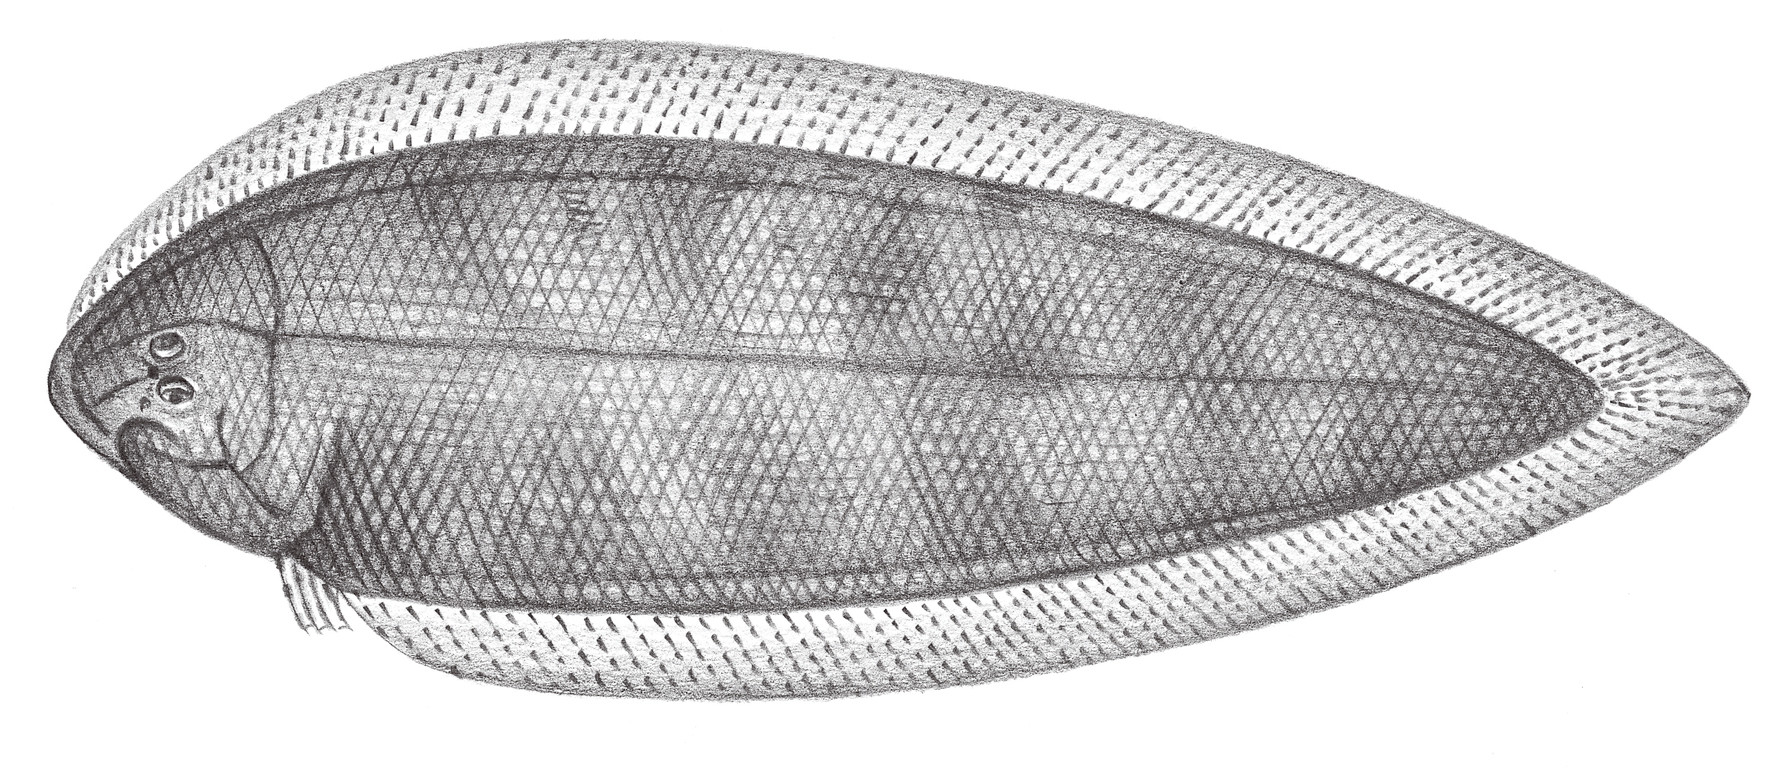 2457.	斷線舌鰨 Cynoglossus interruptus Günther, 1880